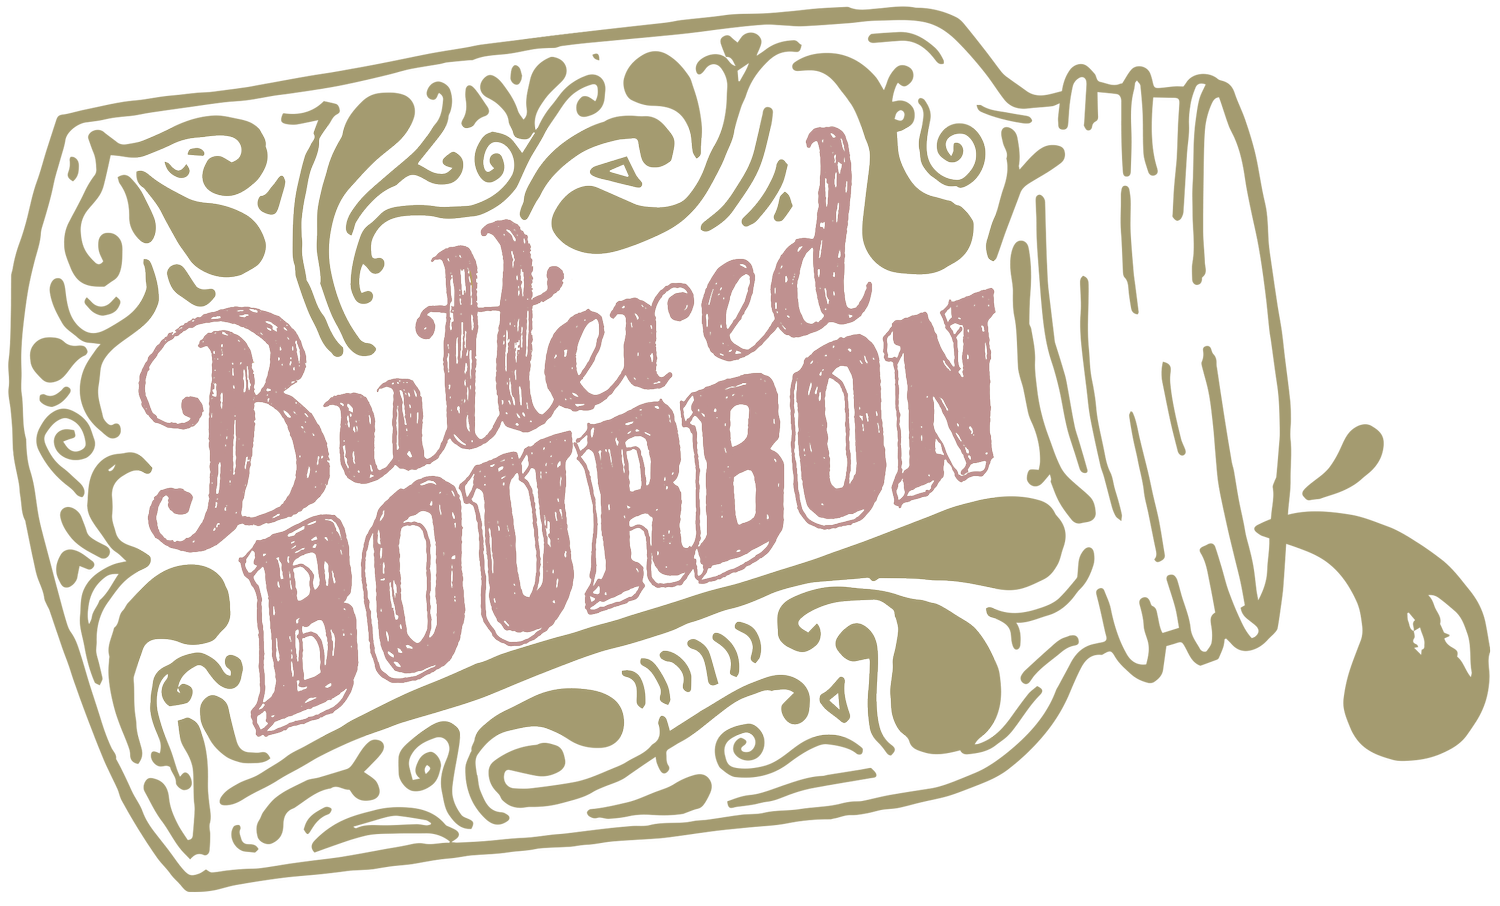 Buttered Bourbon